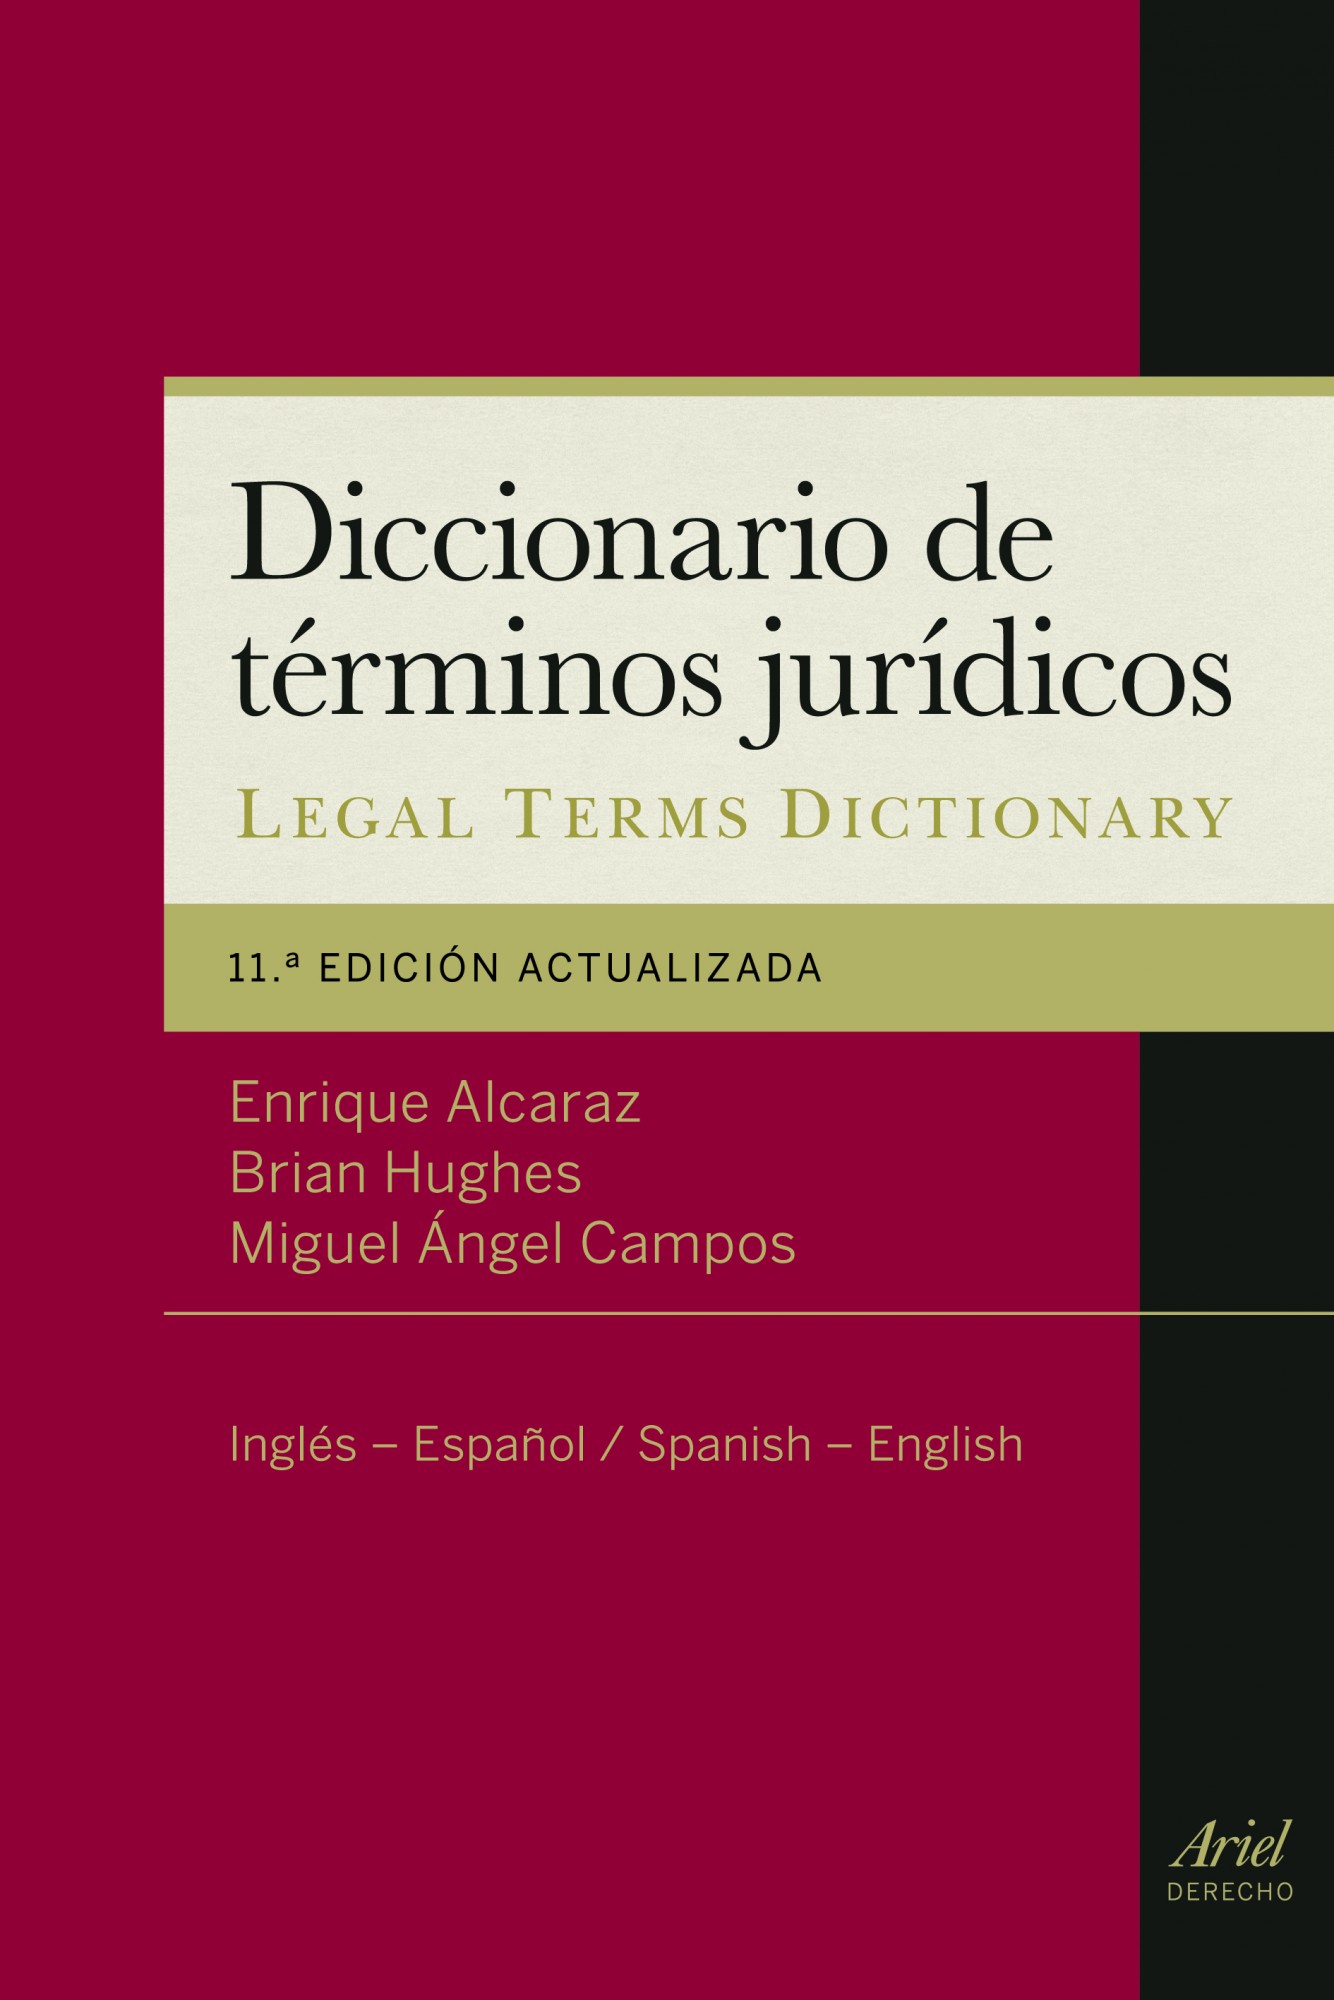 Diccionario de términos jurídicos = A dictionary of legal terms